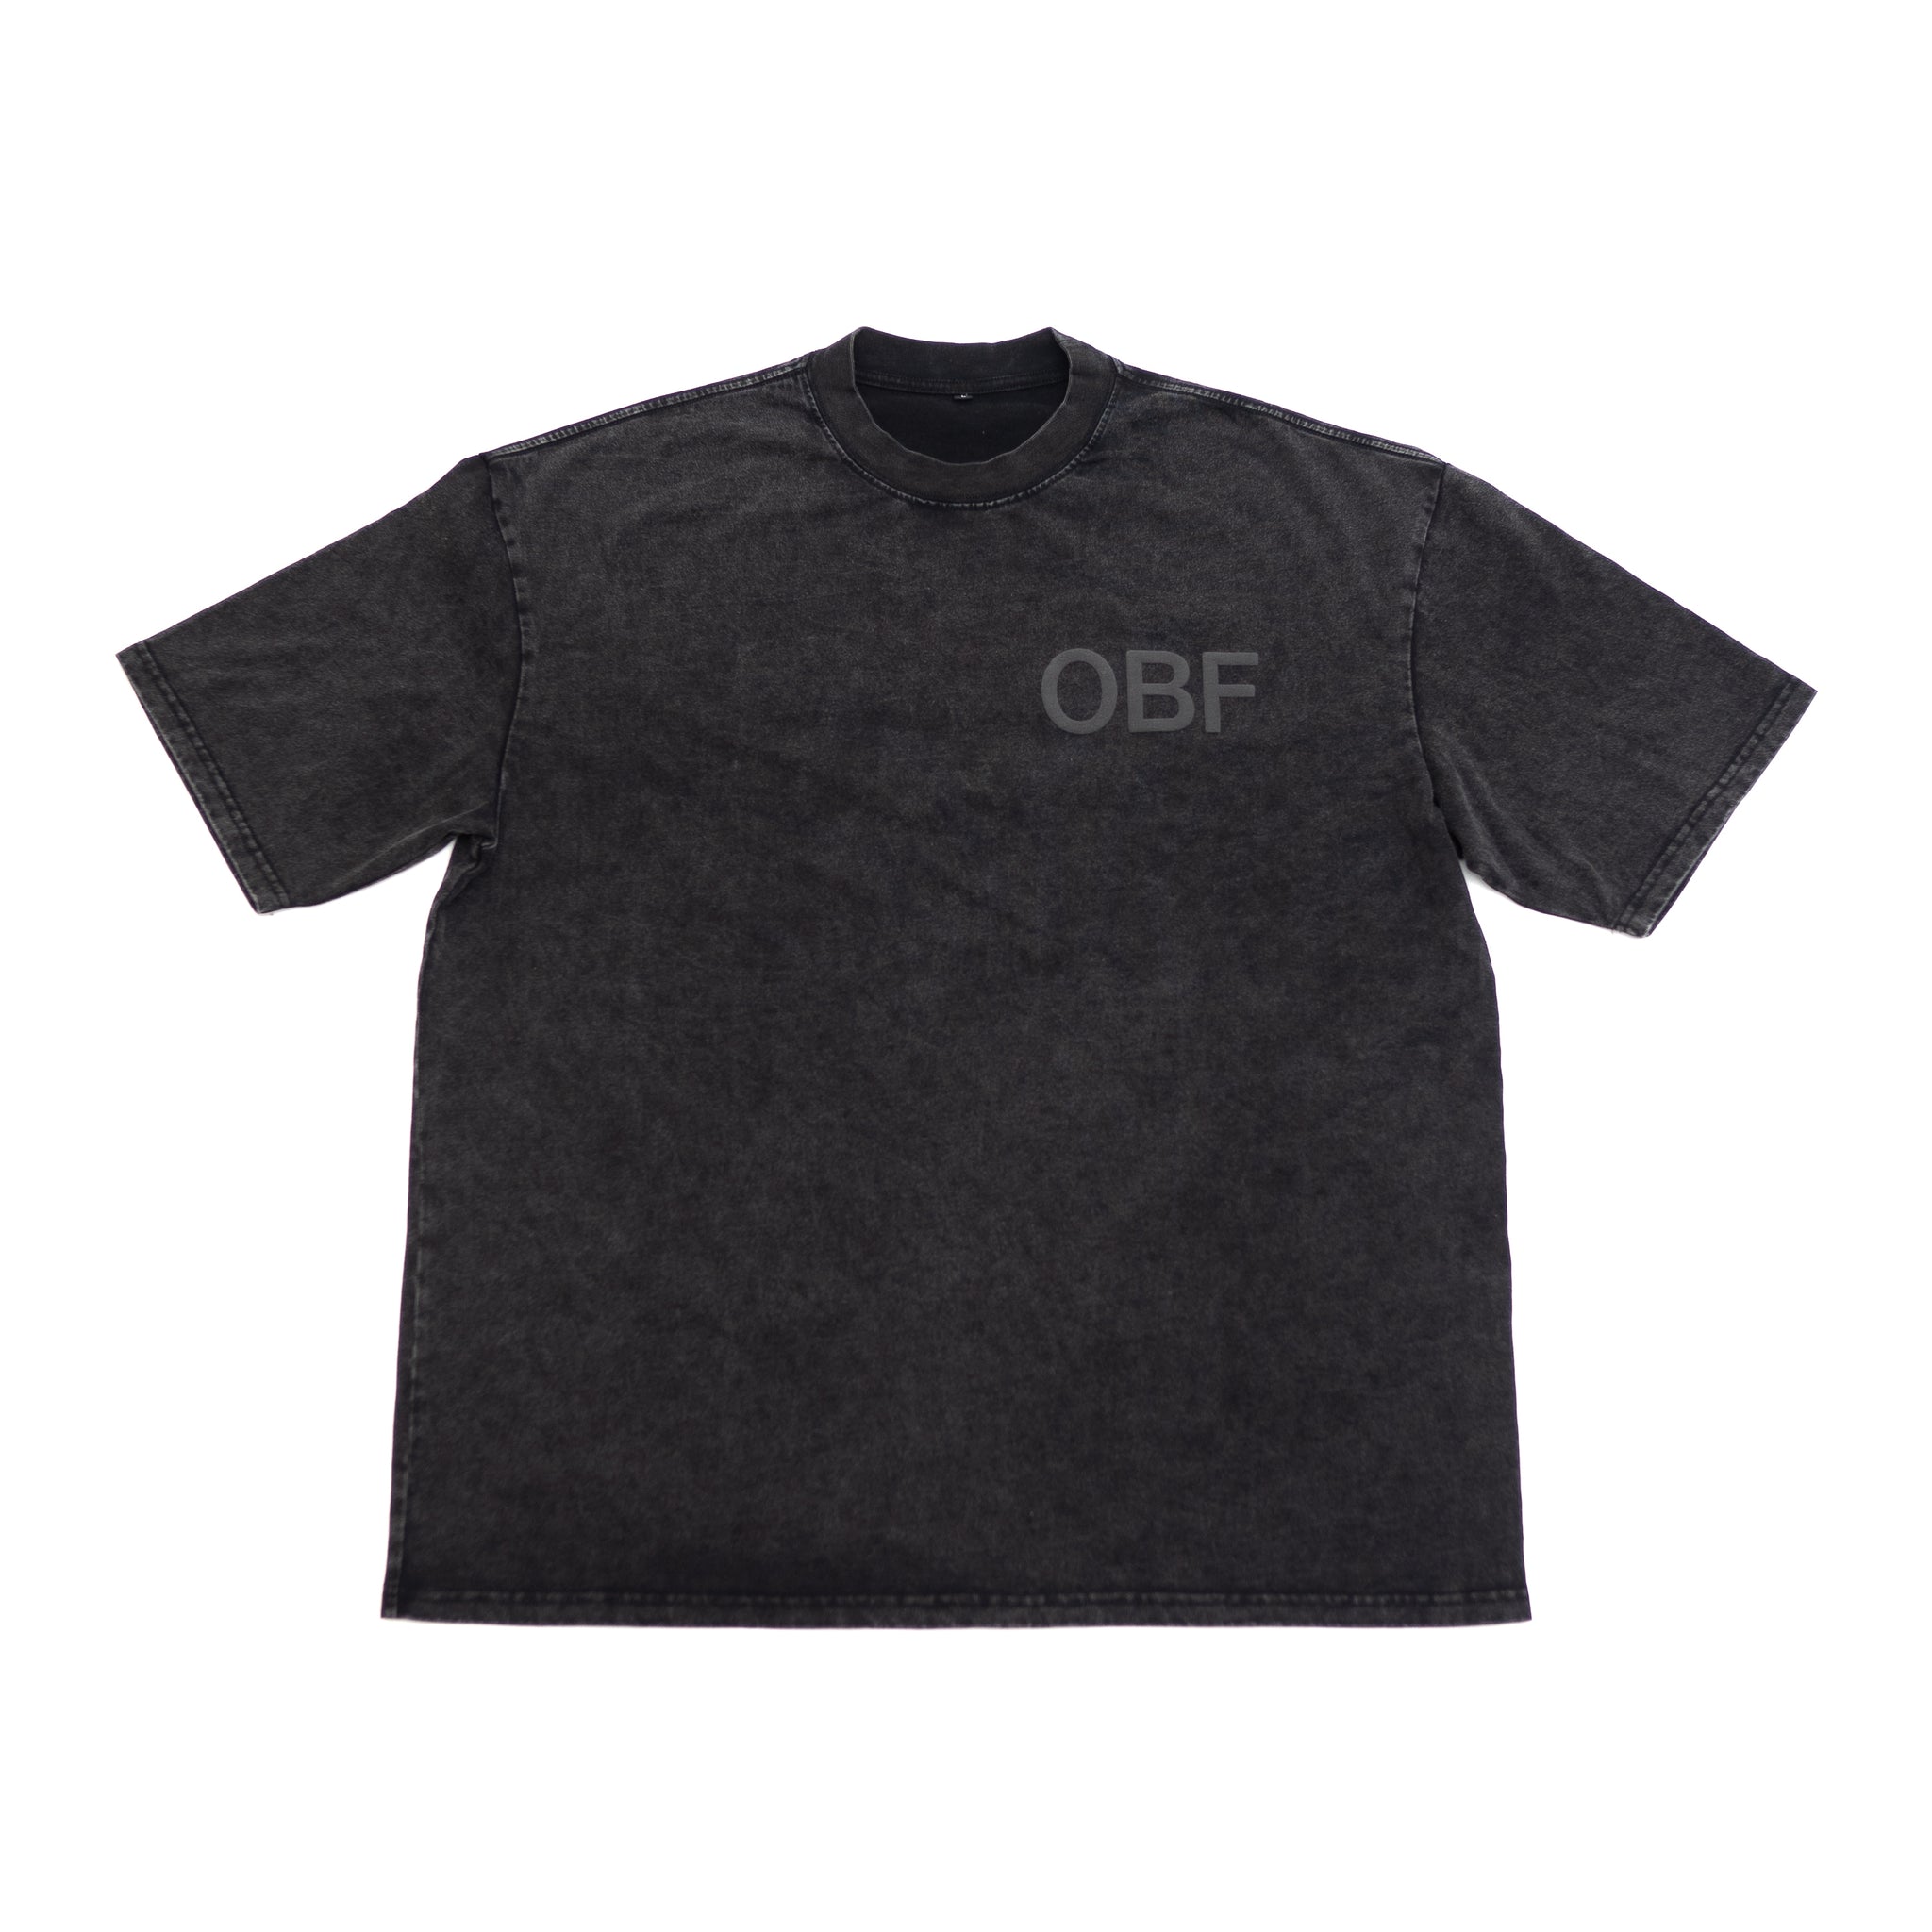 OBF Crew Tee - Acid Black